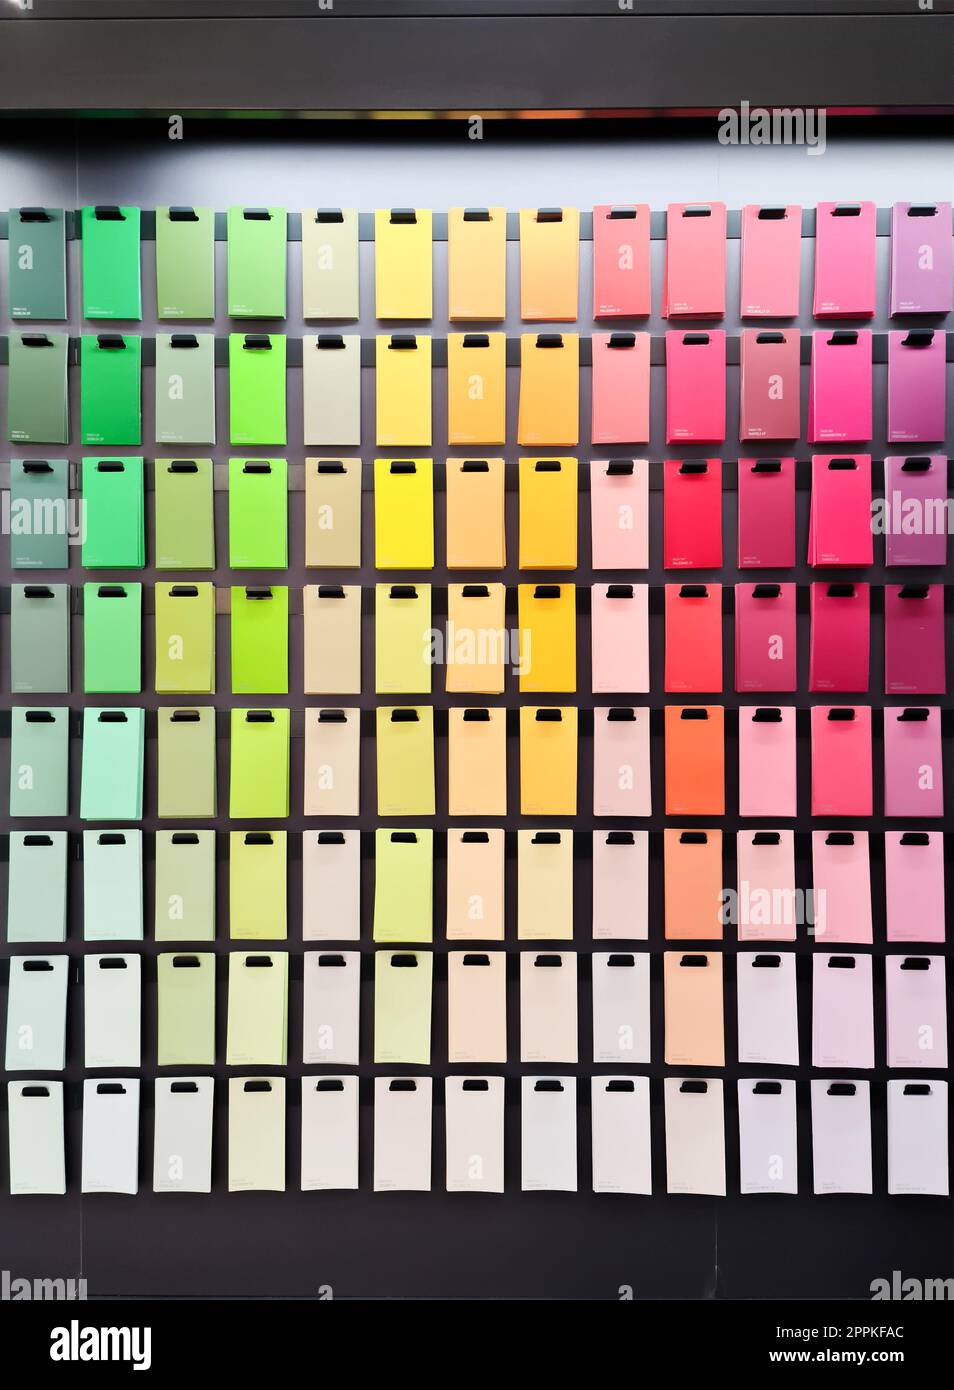 Kiel, Germania - 11 febbraio 2023: Vari colori del marchio Liquitex in una sezione di verniciatura di un negozio fai da te. Foto Stock